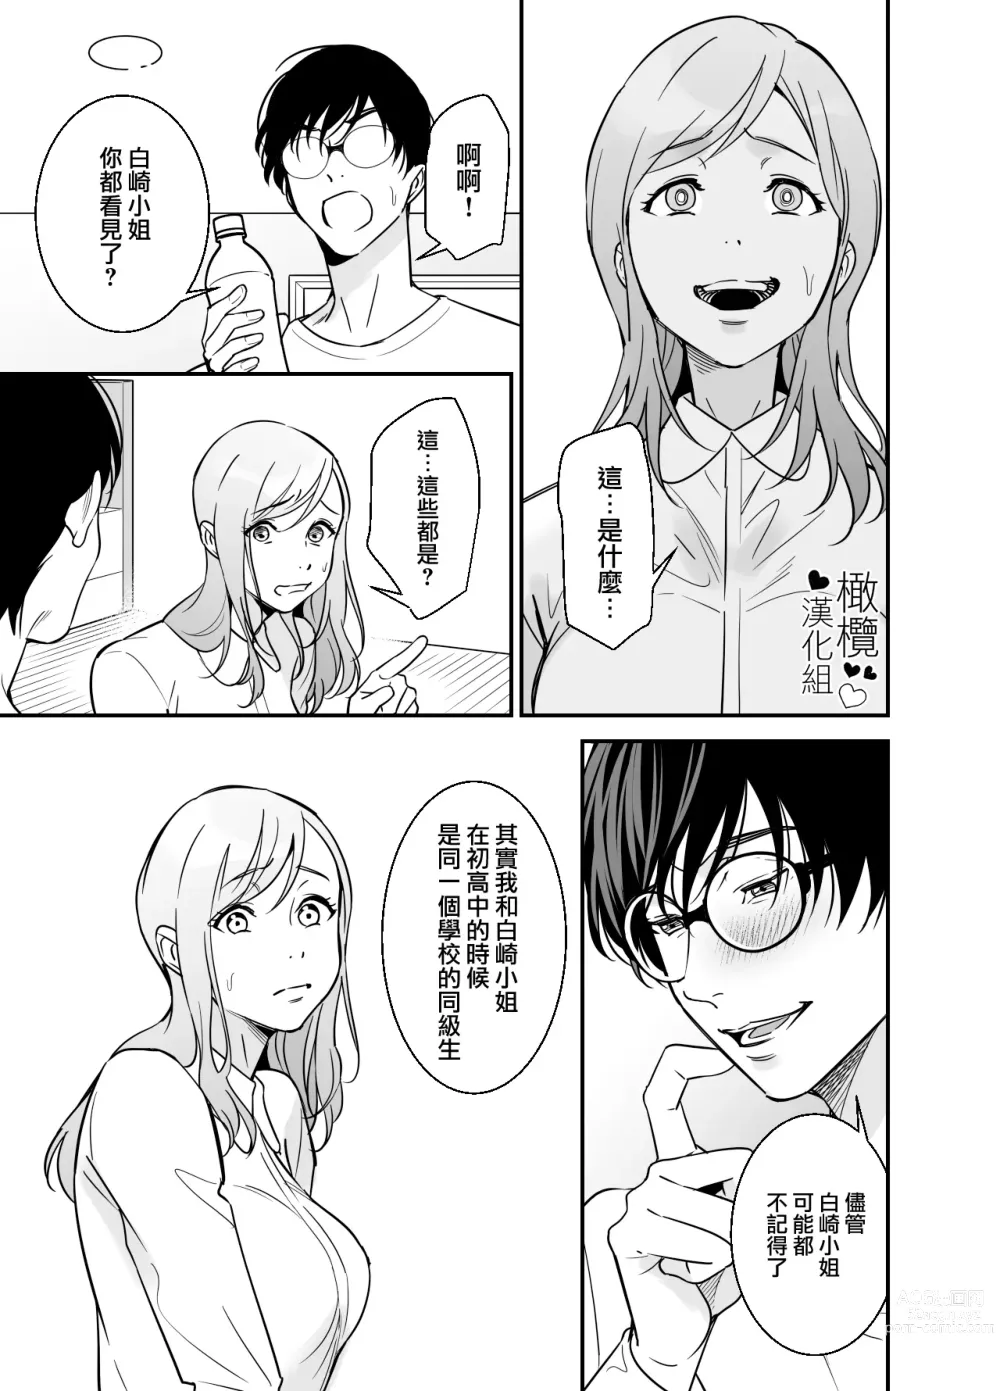 Page 58 of doujinshi 处男小说家和家政妇小姐